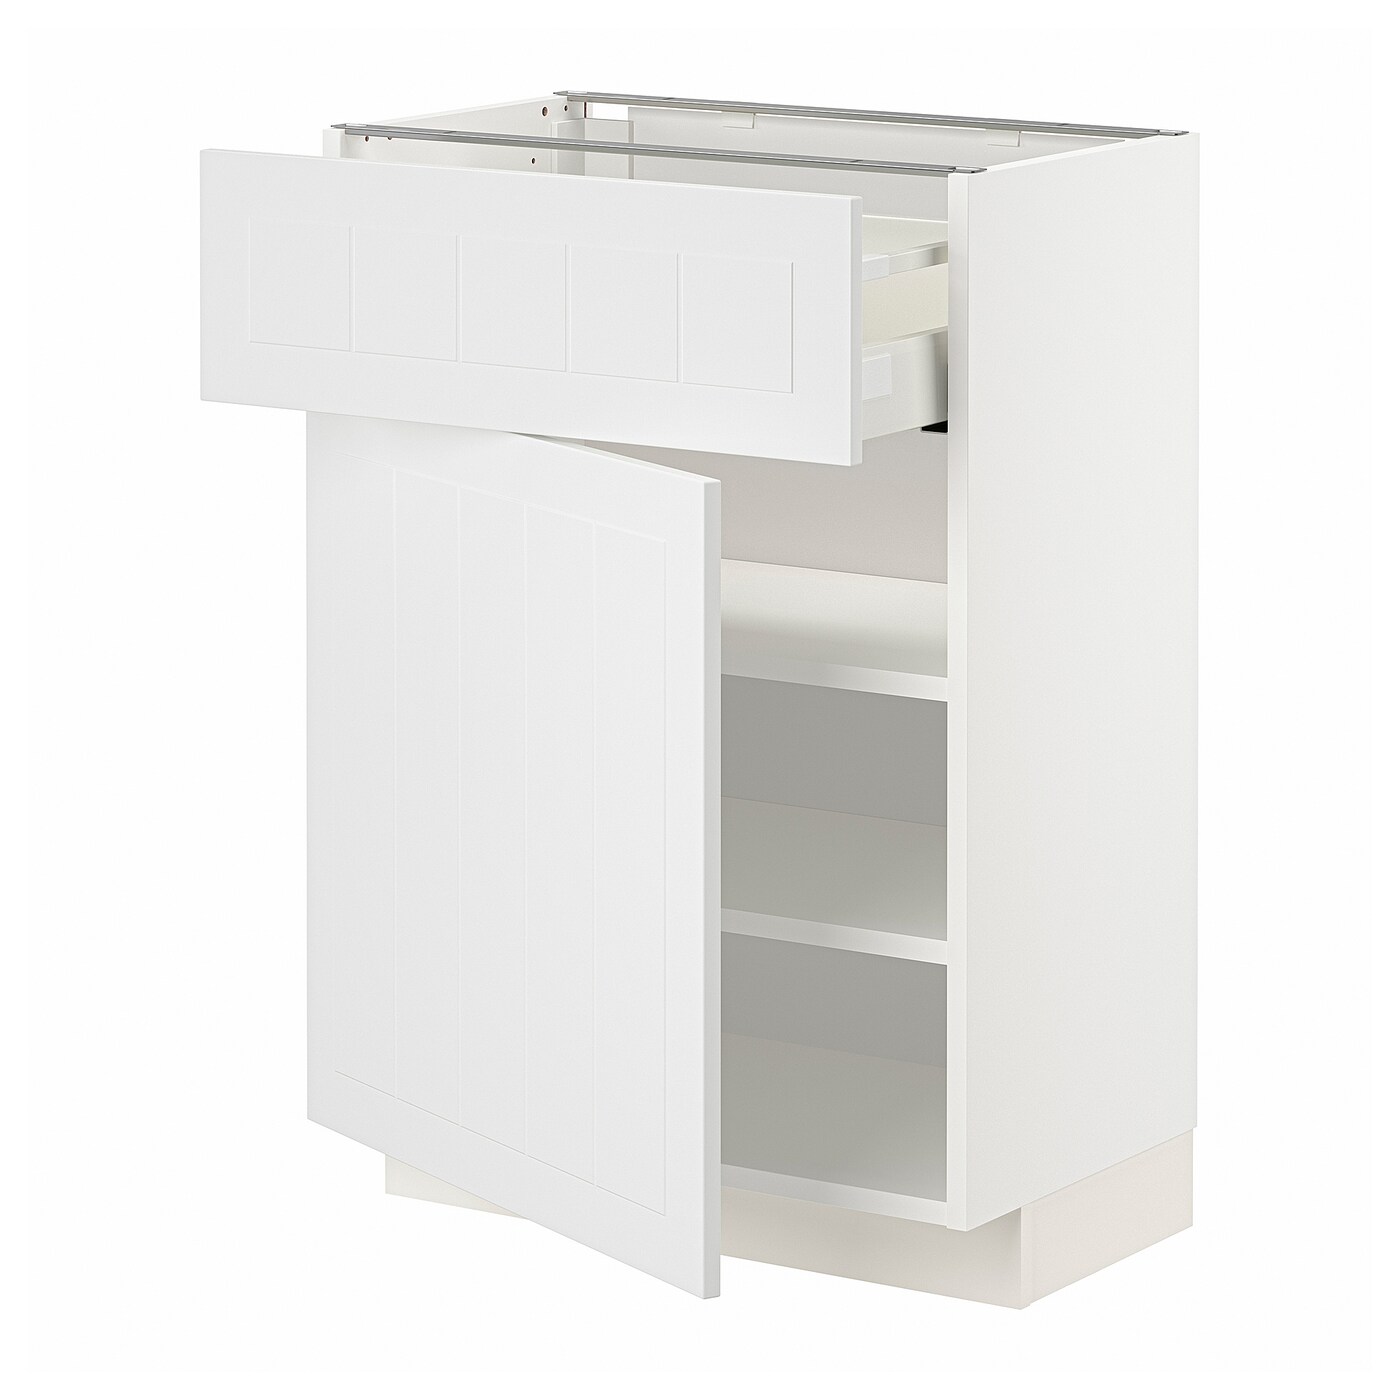 Напольный шкаф - IKEA METOD MAXIMERA, 88x39,5x60см, белый, МЕТОД МАКСИМЕРА ИКЕА